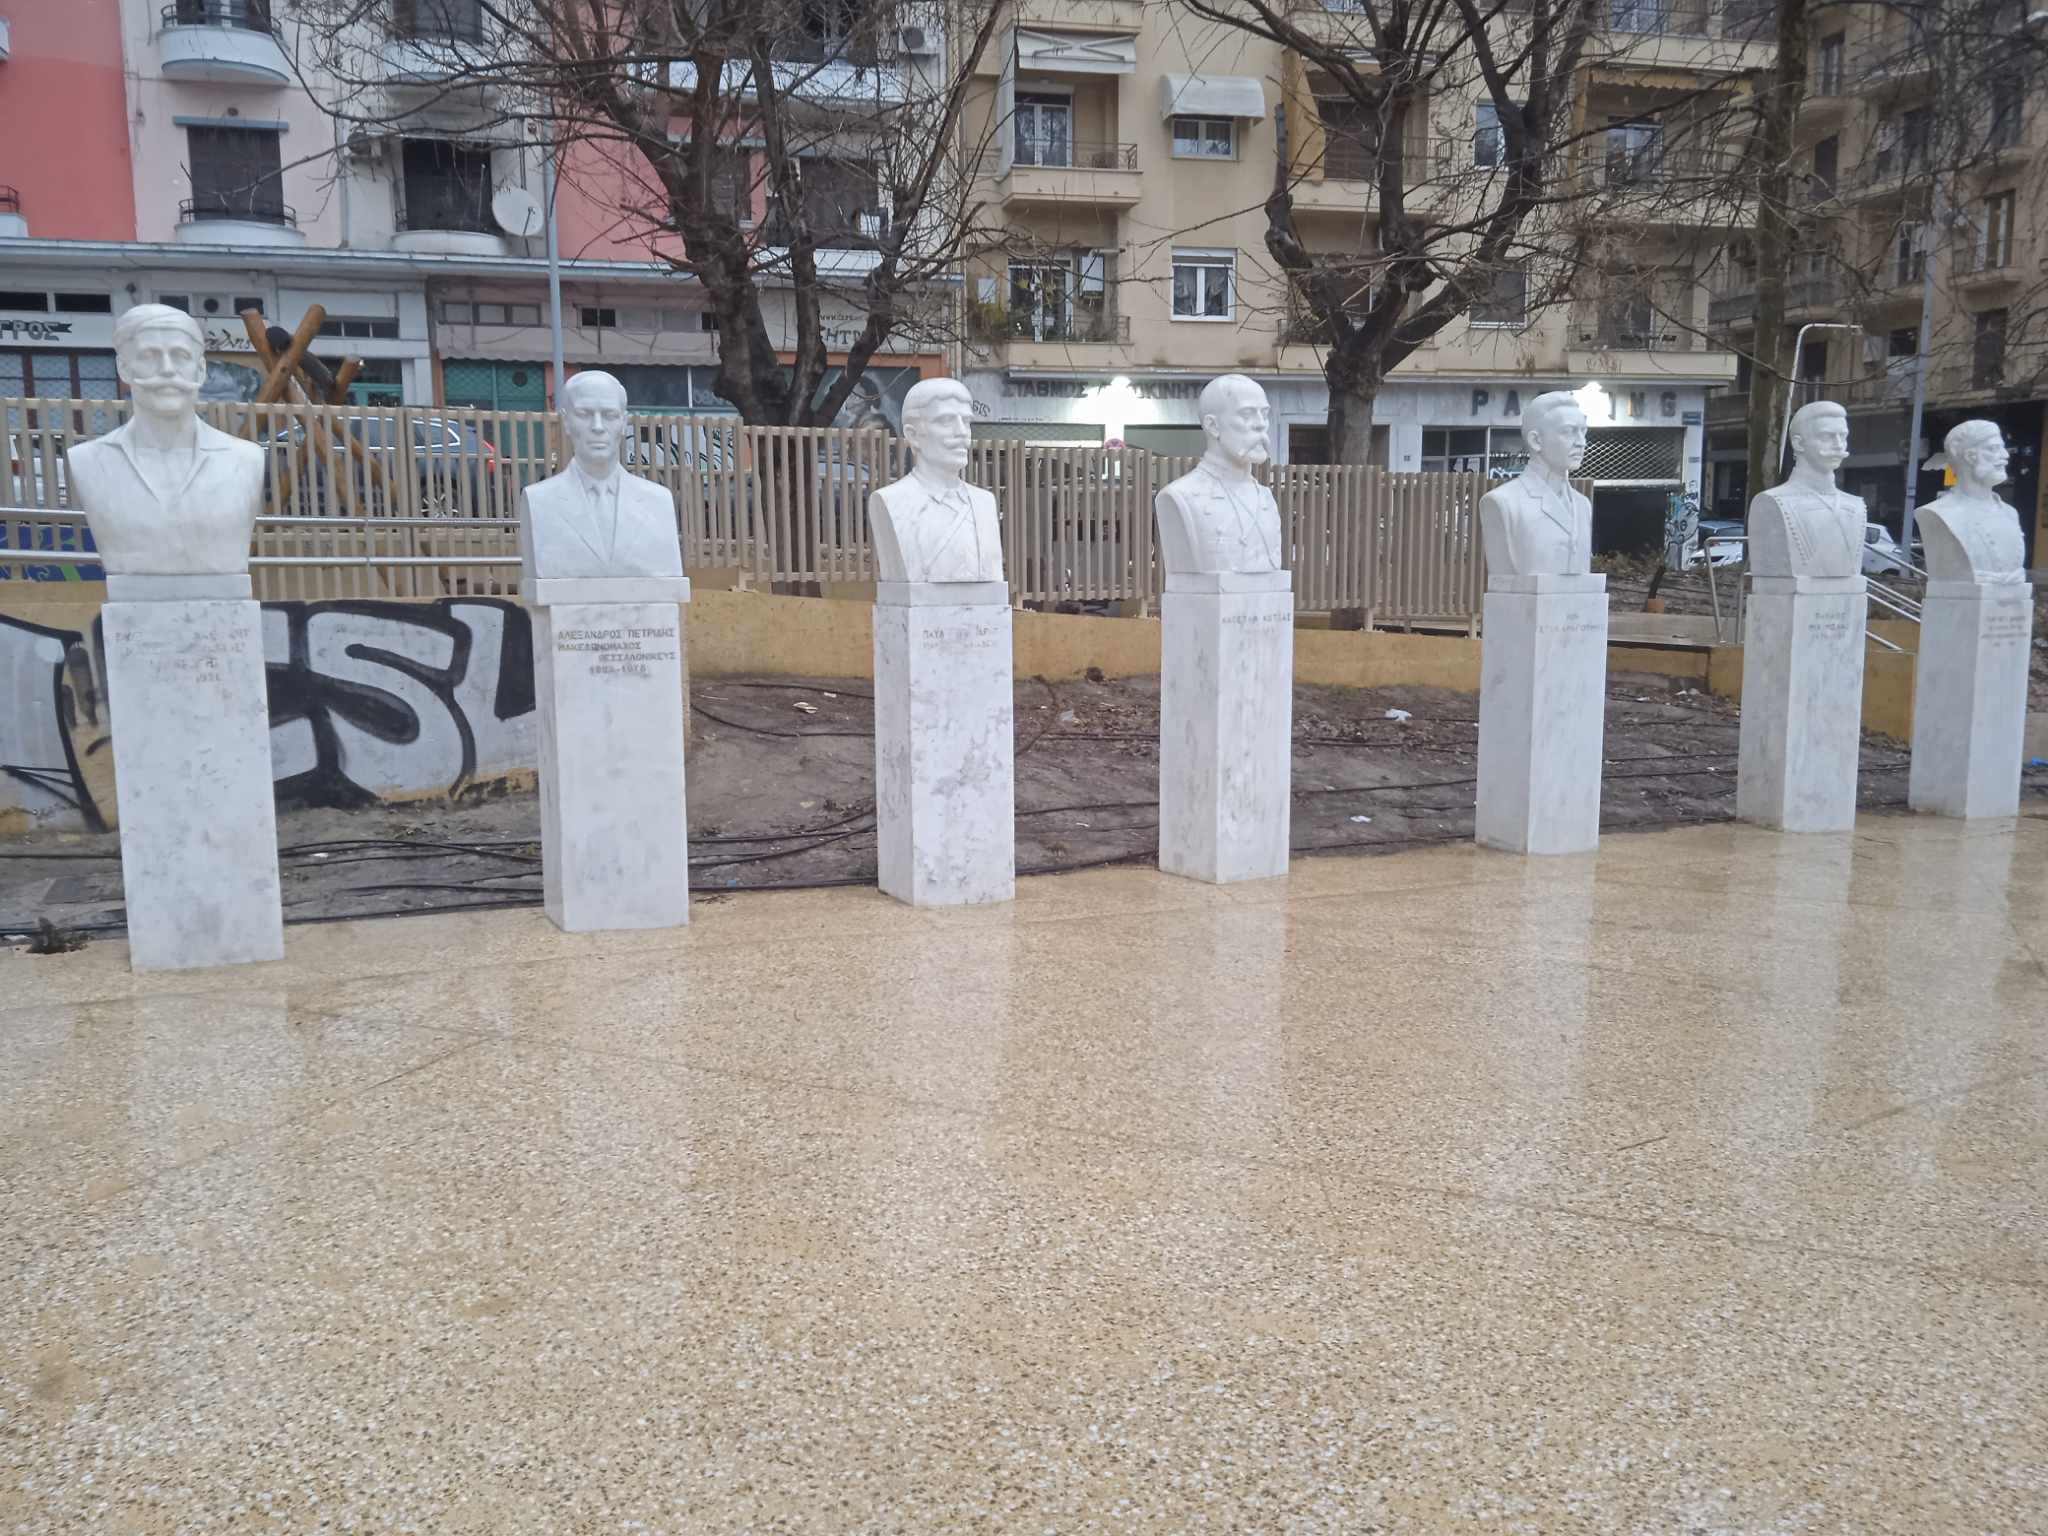 Θεσσαλονίκη: Άγνωστοι έβαψαν με σπρέι τις προτομές των Μακεδονομάχων